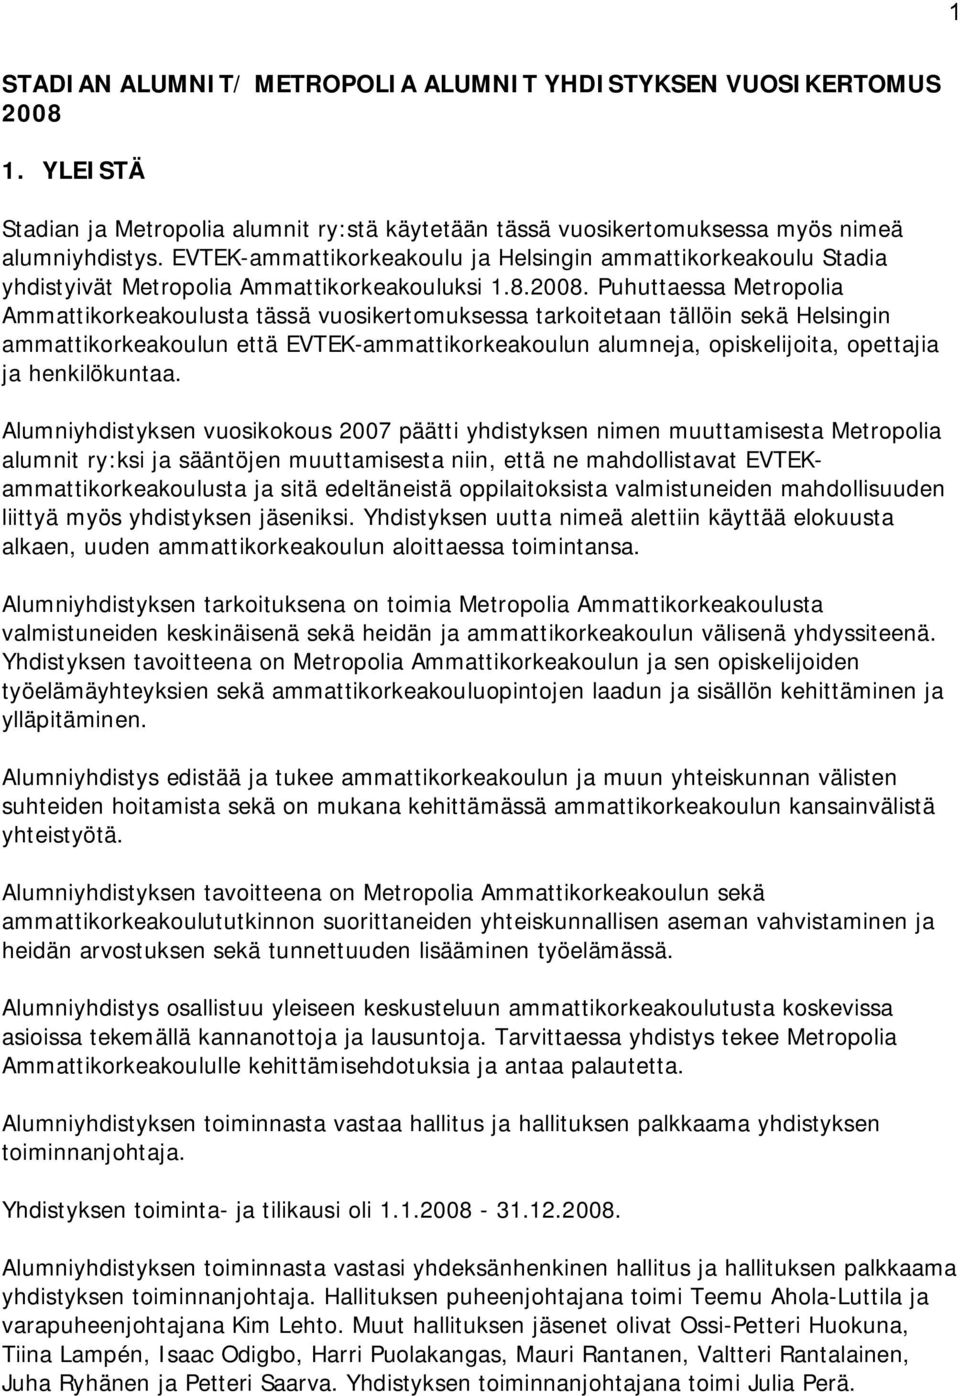 Puhuttaessa Metropolia Ammattikorkeakoulusta tässä vuosikertomuksessa tarkoitetaan tällöin sekä Helsingin ammattikorkeakoulun että EVTEK-ammattikorkeakoulun alumneja, opiskelijoita, opettajia ja